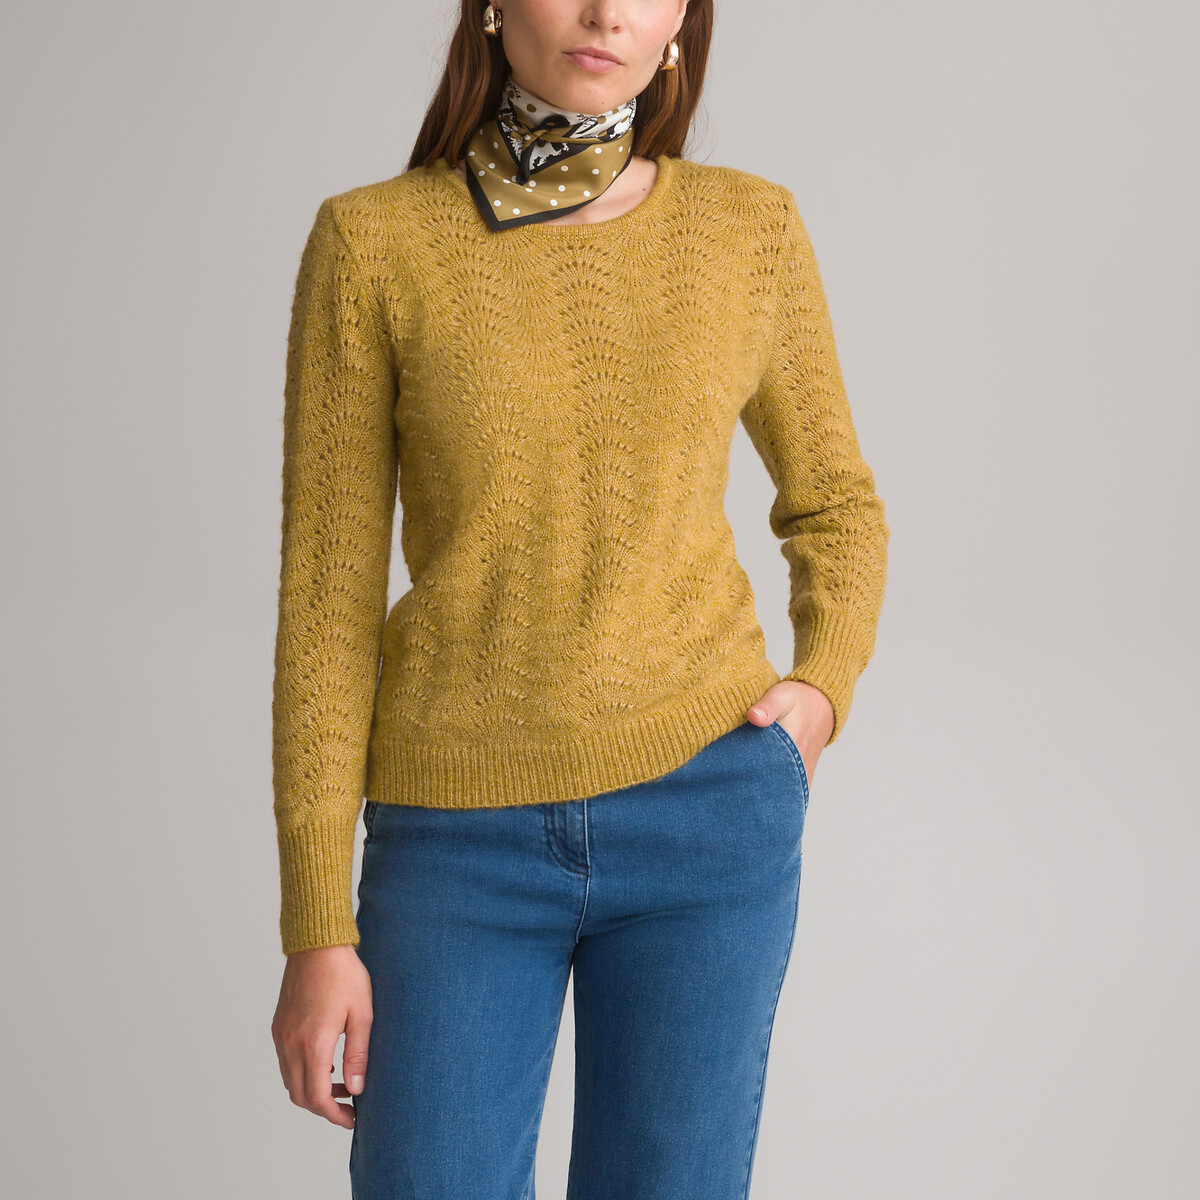 Пуловер с круглым вырезом из тонкого ажурного трикотажа 46/48 (FR) - 52/54 (RUS) желтый